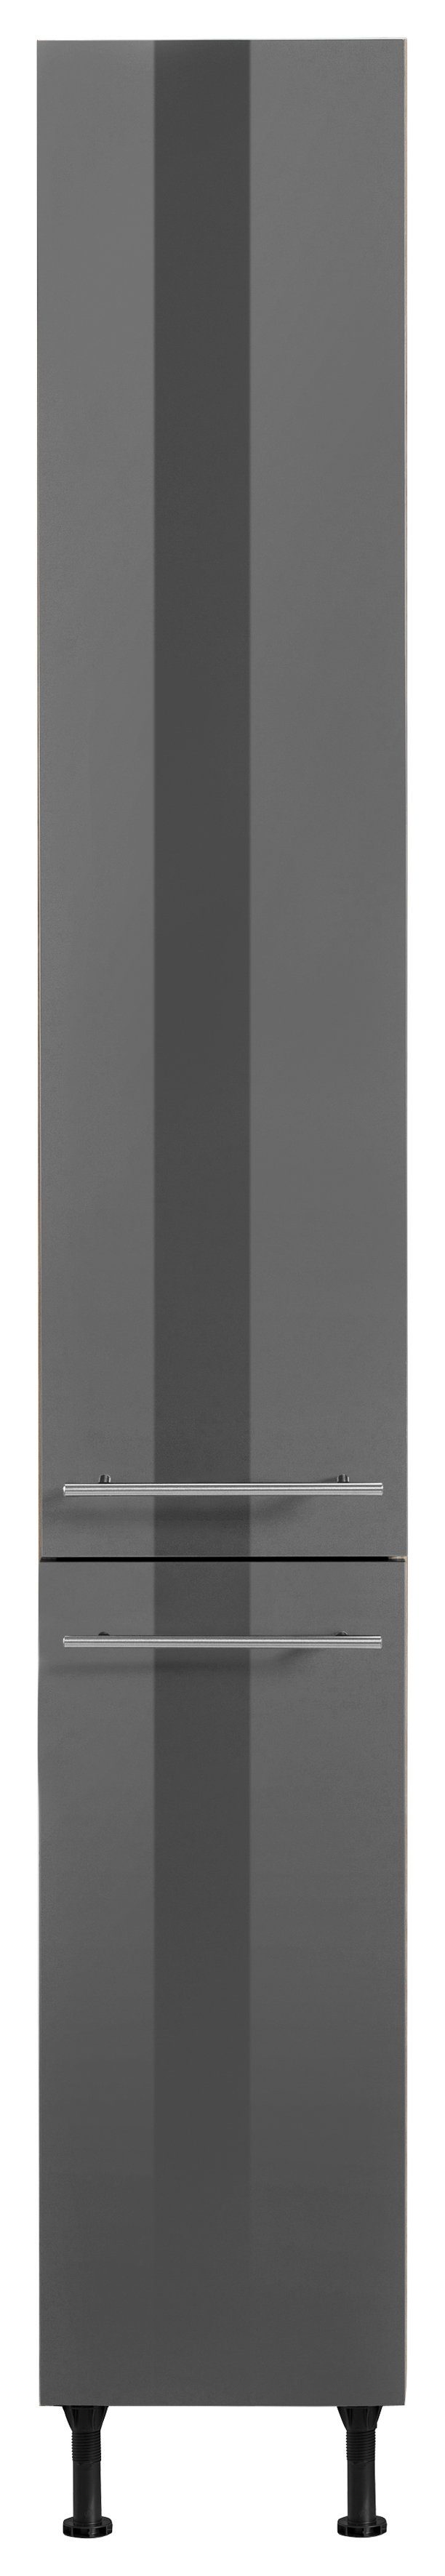 Apothekerschrank breit, hoch, 212 cm | grau akaziefarben cm höhenverstellbaren 30 Bern mit OPTIFIT Stellfüßen Hochglanz/akaziefarben